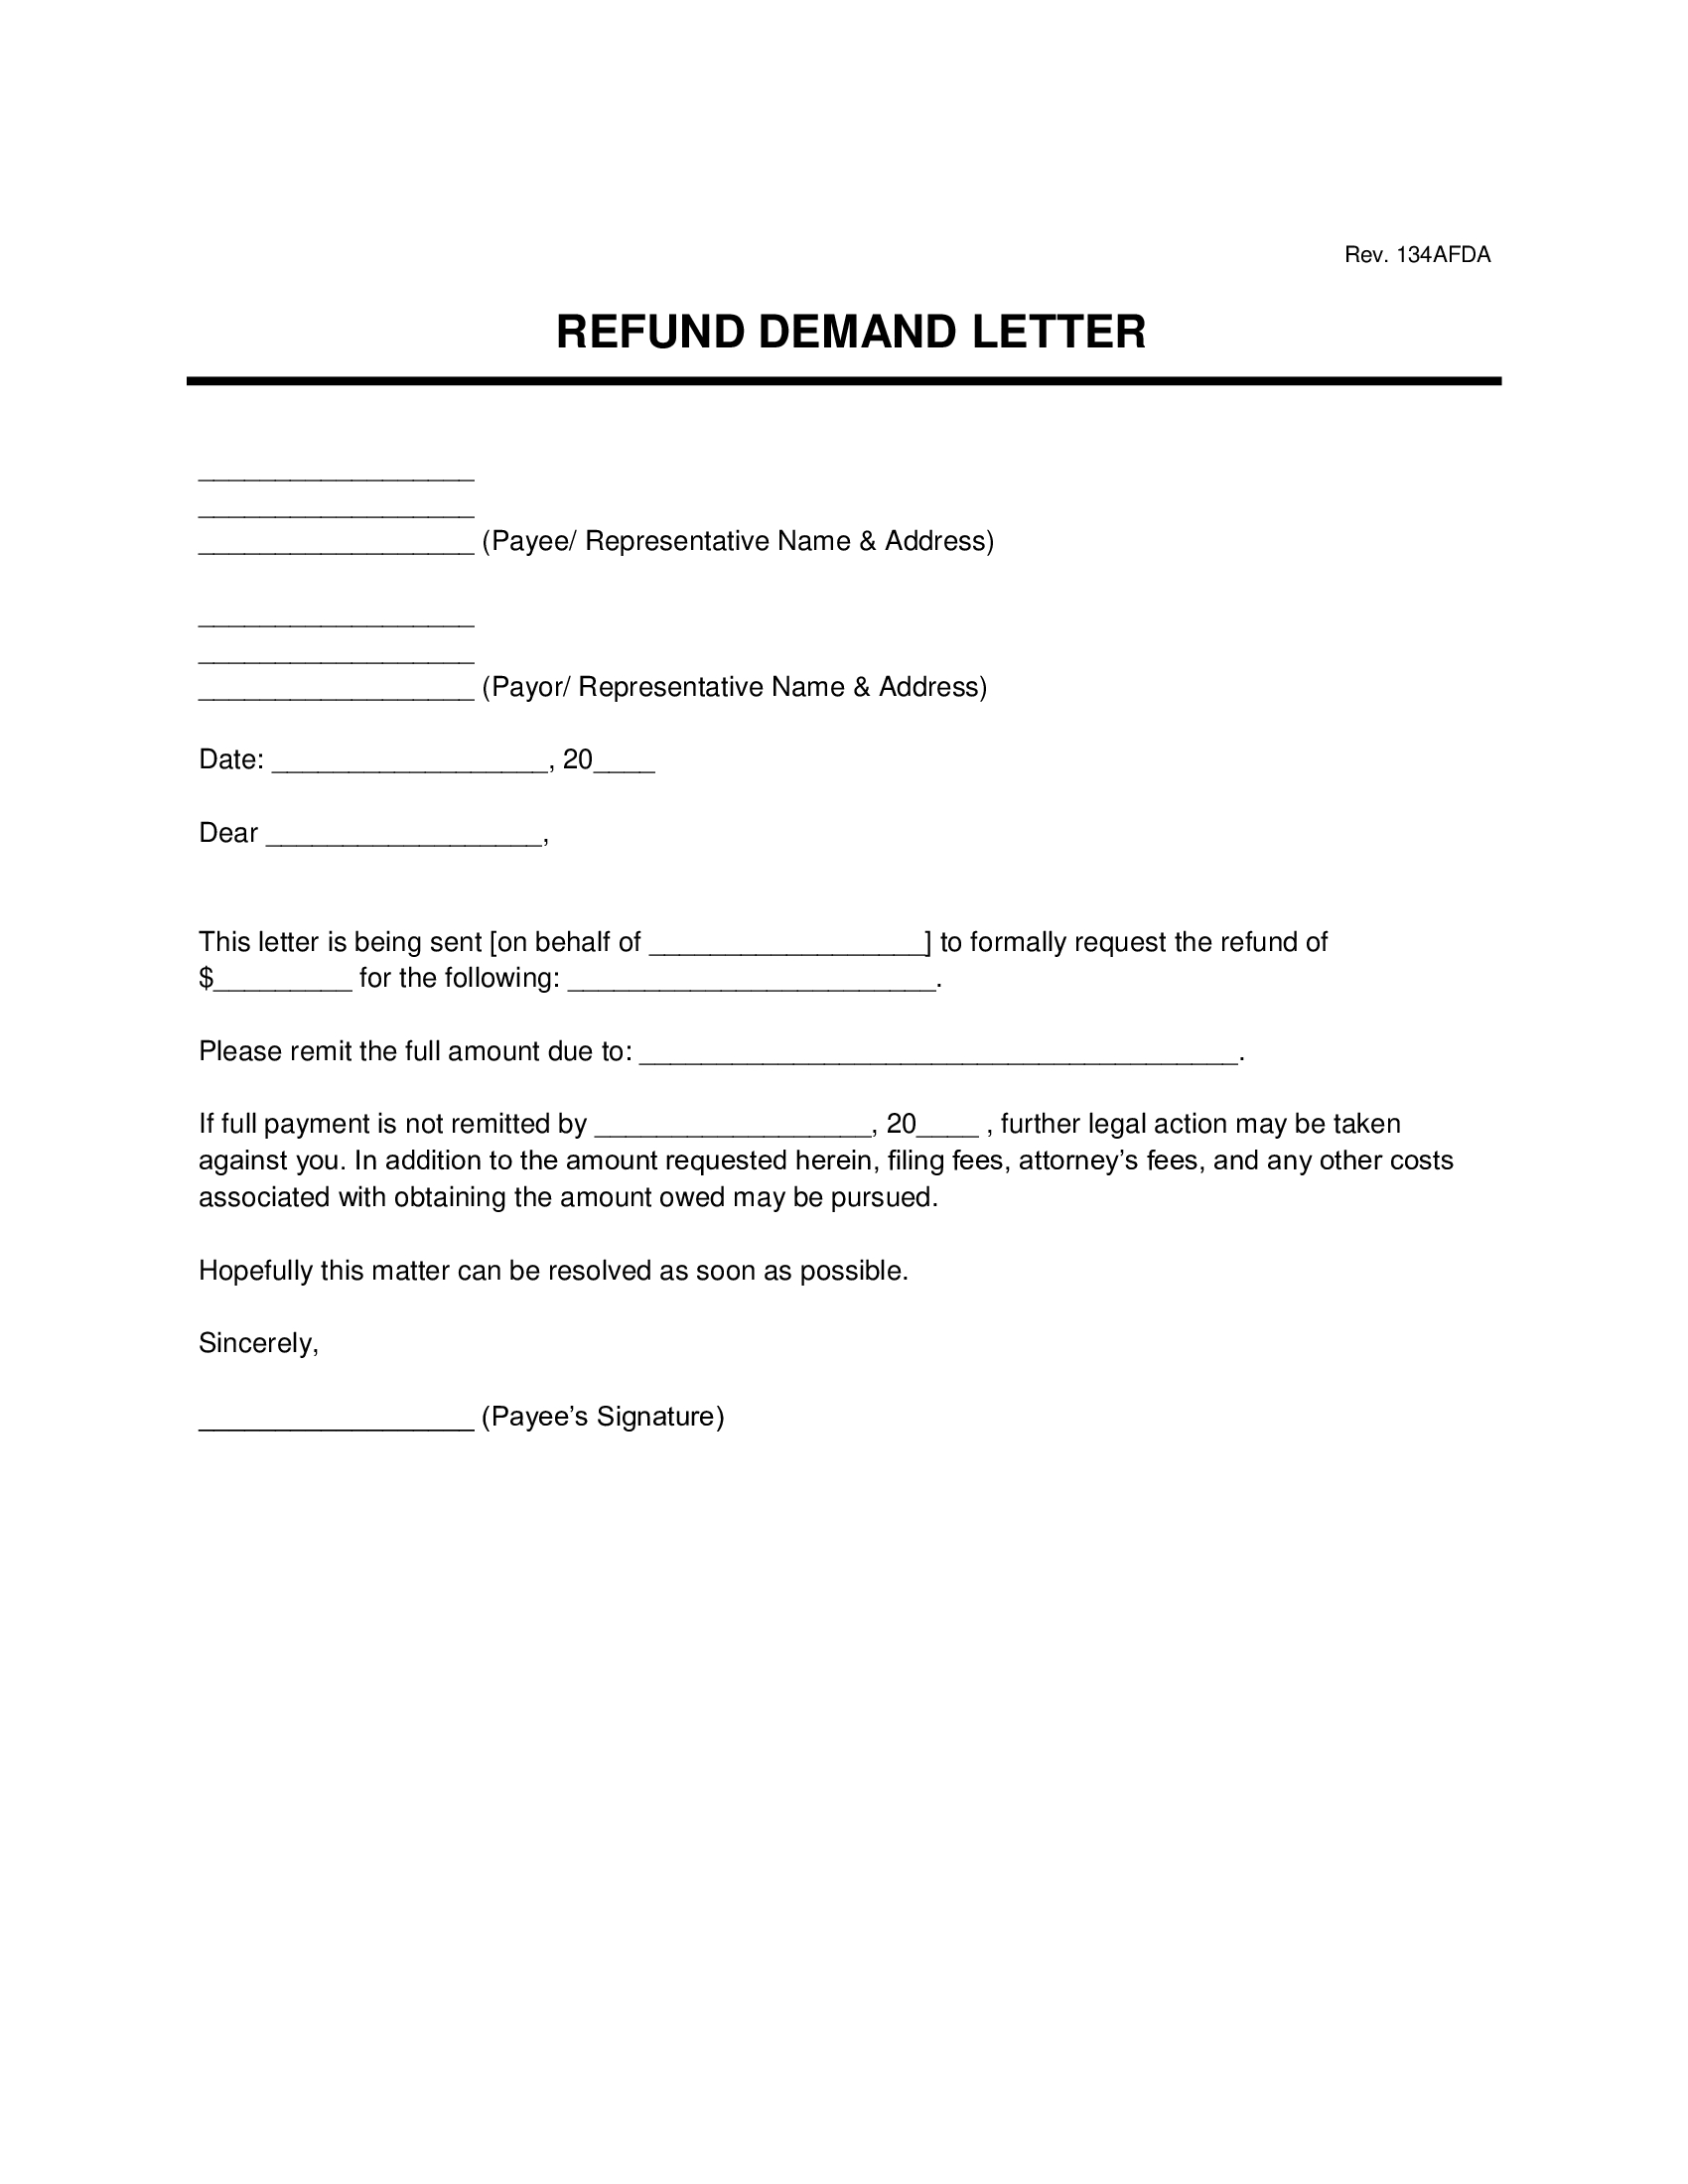 refund demand letter